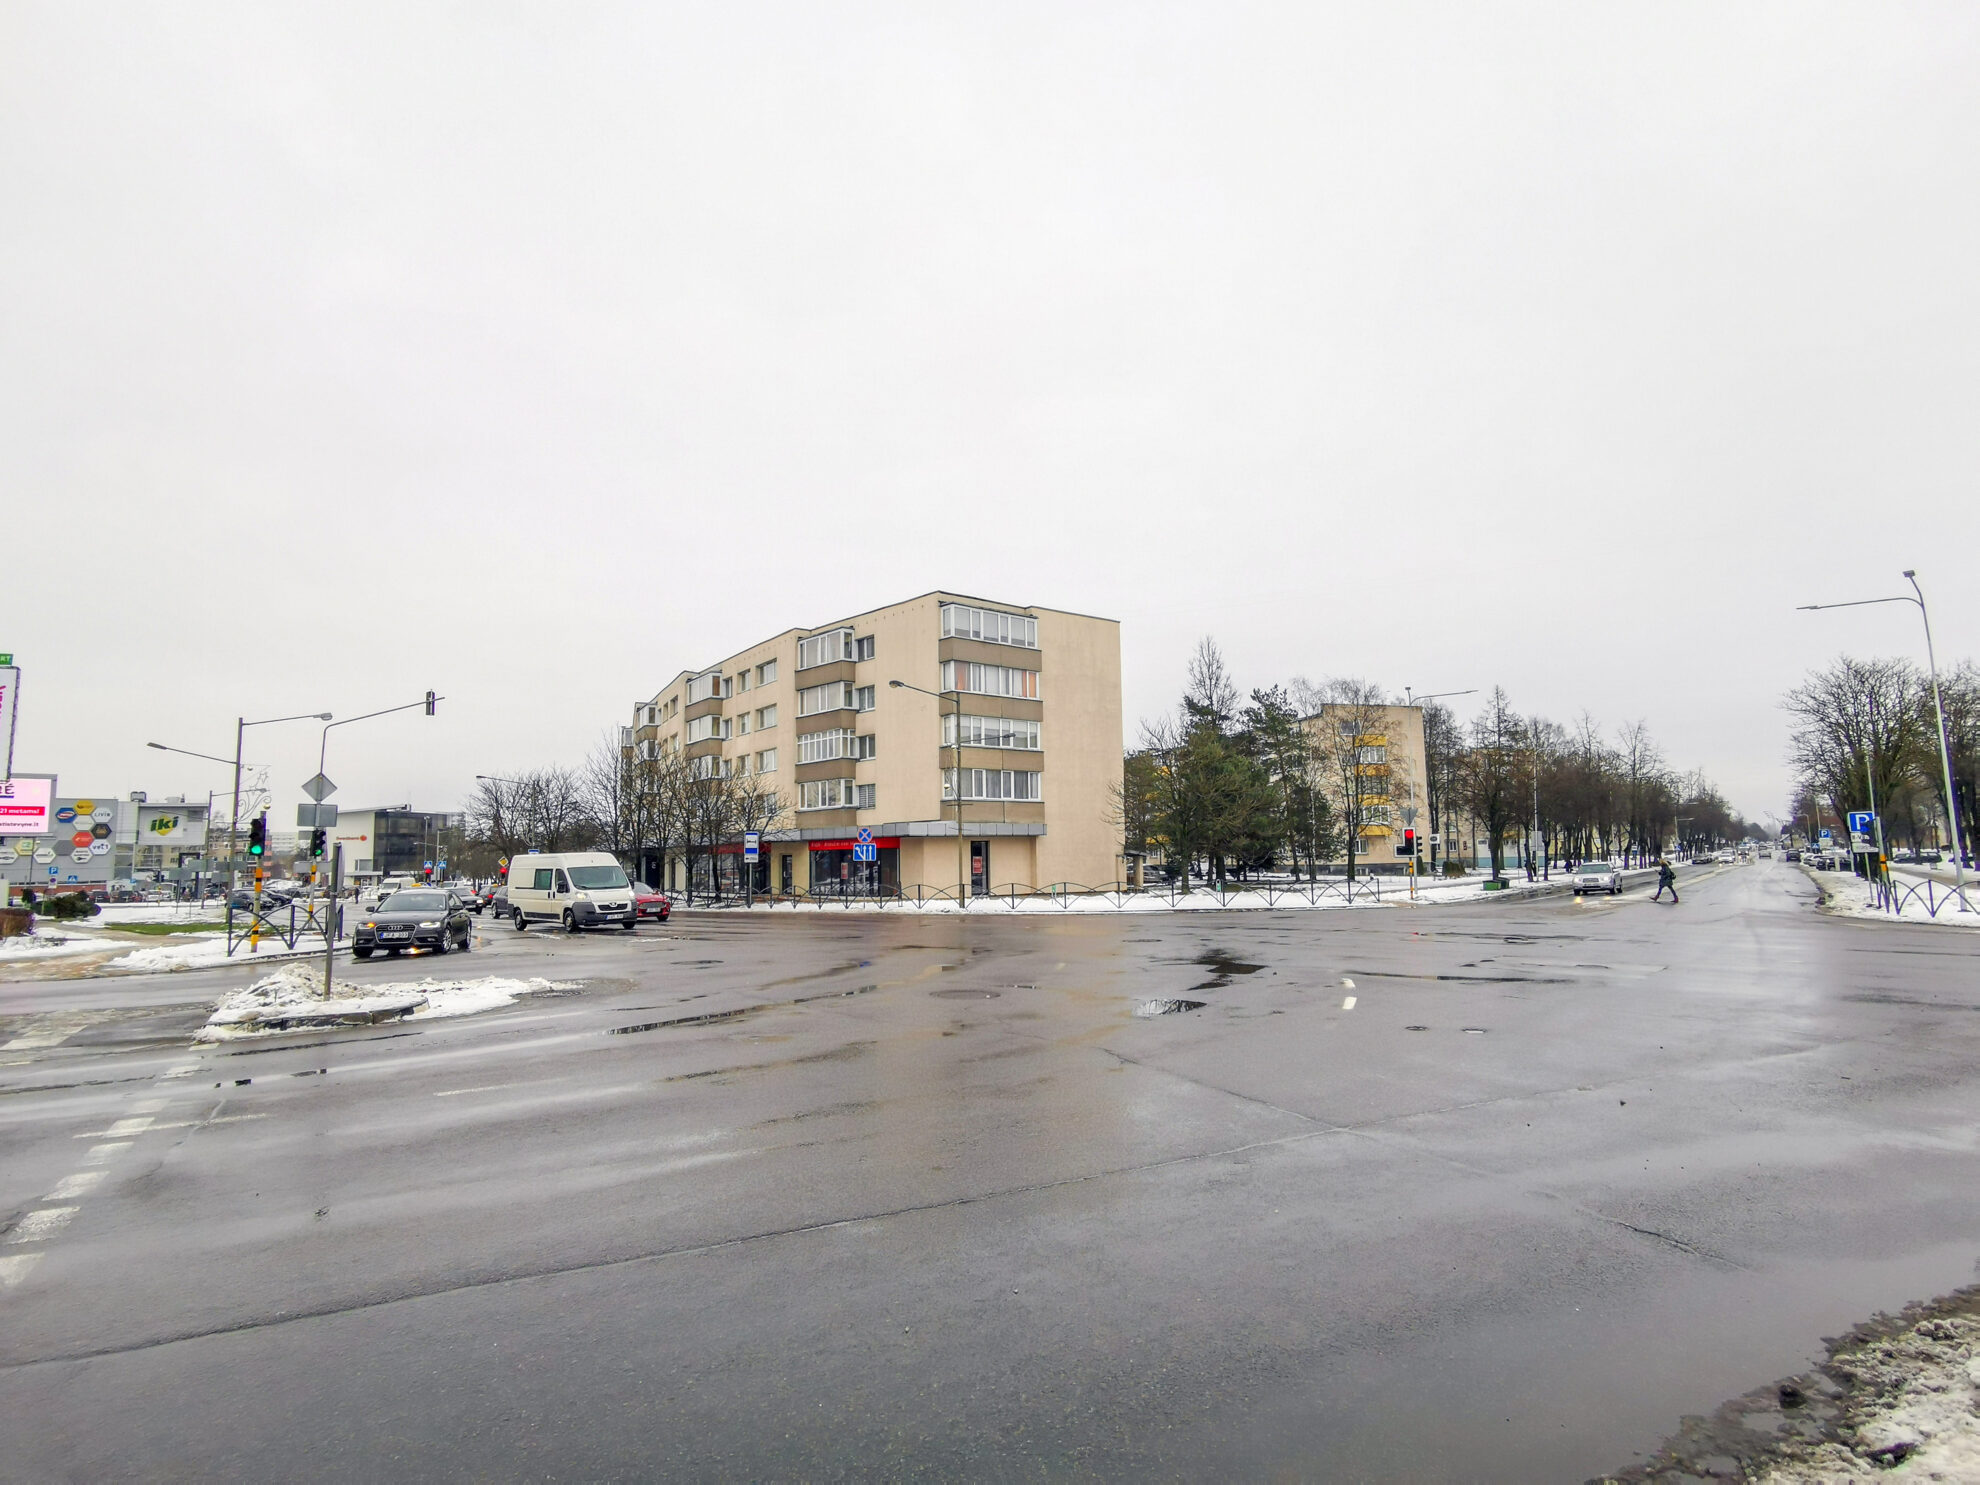 Panevėžyje vienoje judriausių Smėlynės ir S. Kerbedžio gatvių sankryžoje transporto srautus jau reguliuoja naujas išmanusis šviesoforas, o dar šįmet tokie atsiras ir pačiame miesto centre.